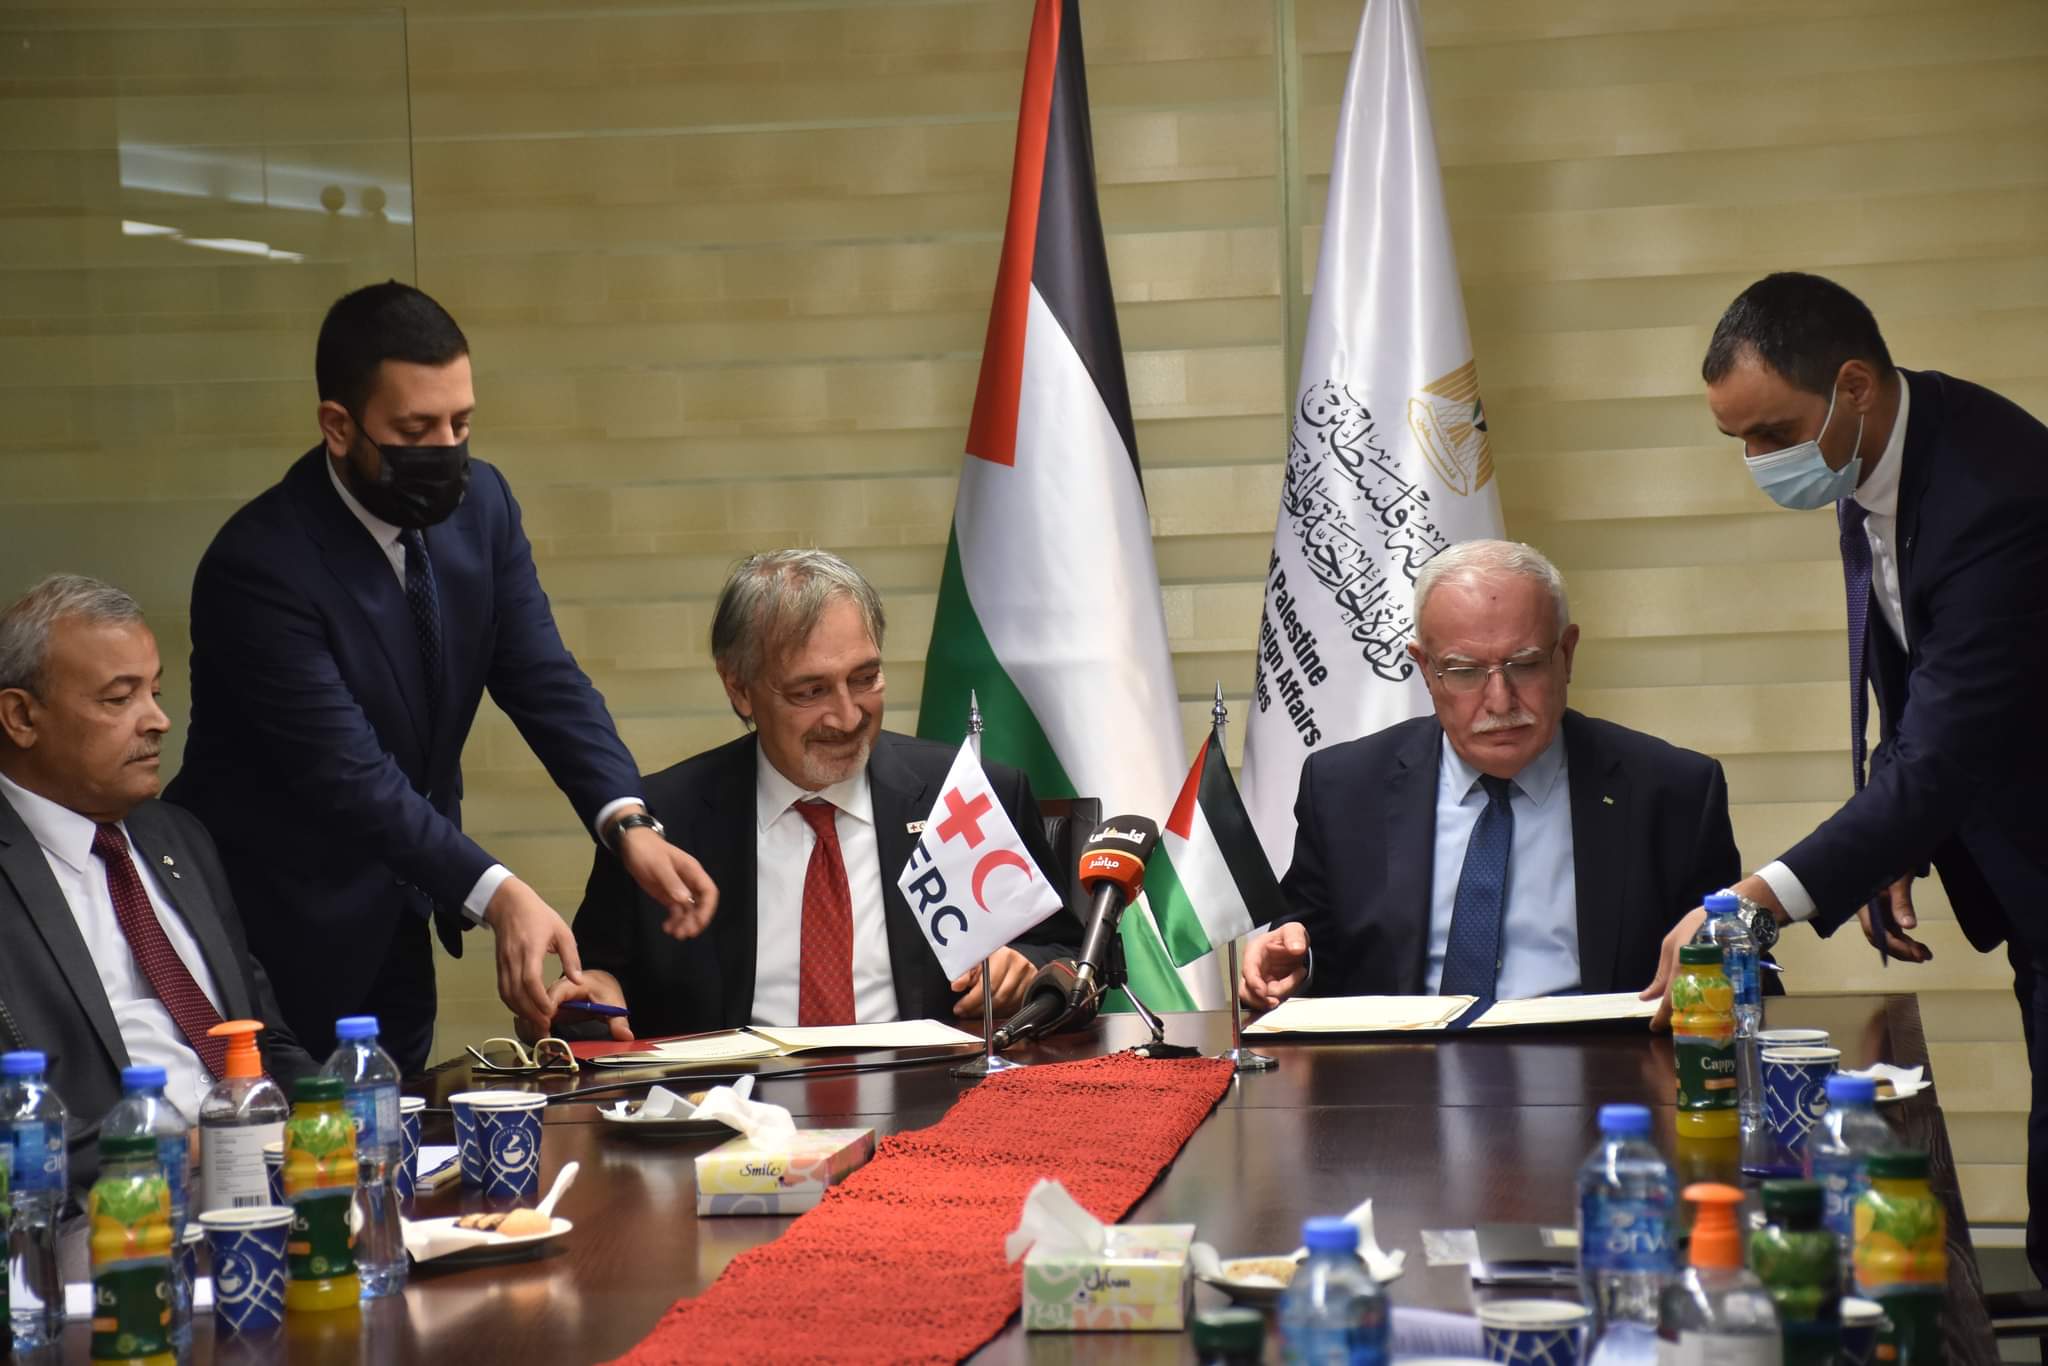 المالكي يوقع اتفاقية لفتح فرع للاتحاد الدولي لجمعيات الصليب والهلال الأحمر في فلسطين